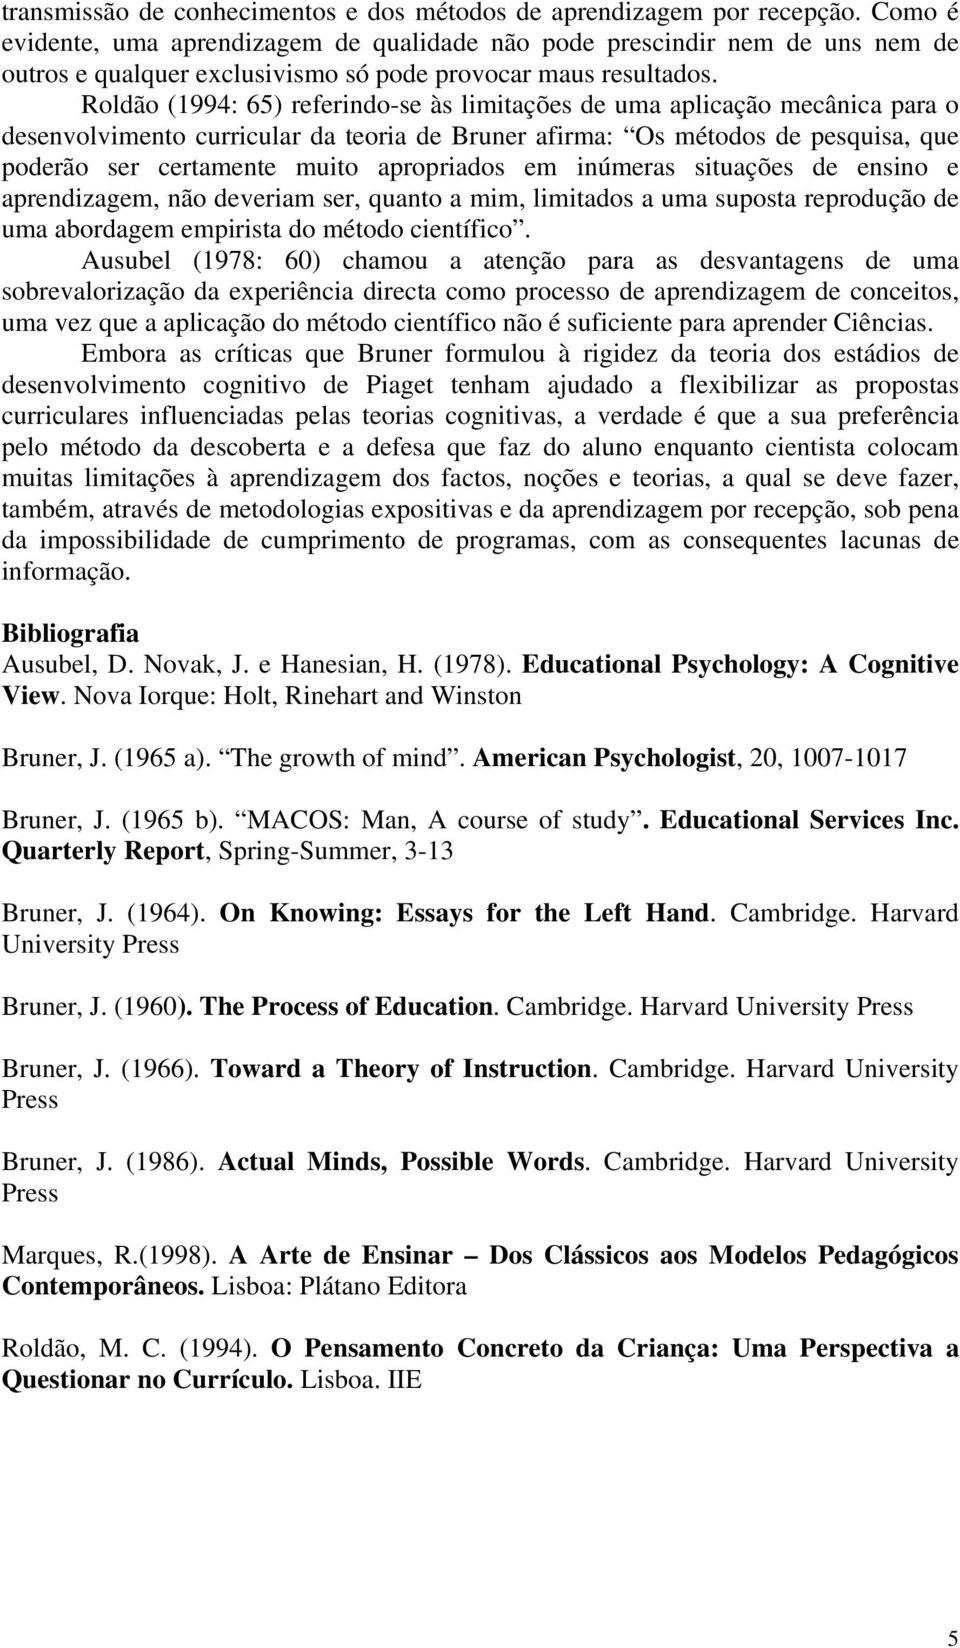 Roldão (1994: 65) referindo-se às limitações de uma aplicação mecânica para o desenvolvimento curricular da teoria de Bruner afirma: Os métodos de pesquisa, que poderão ser certamente muito